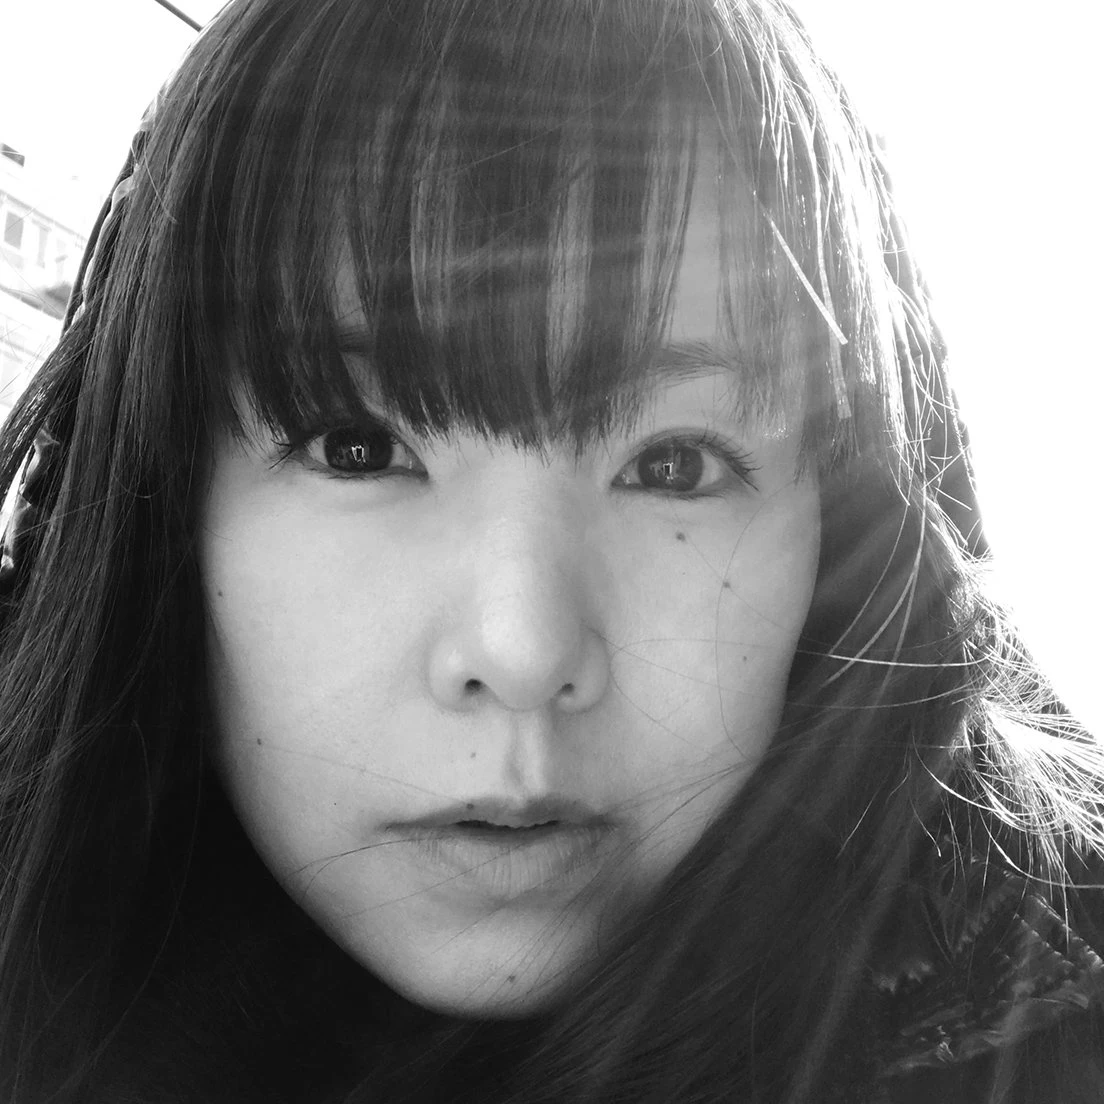 KREVAがプロデュース、小西真奈美がシンガーソングライターとしてデビュー